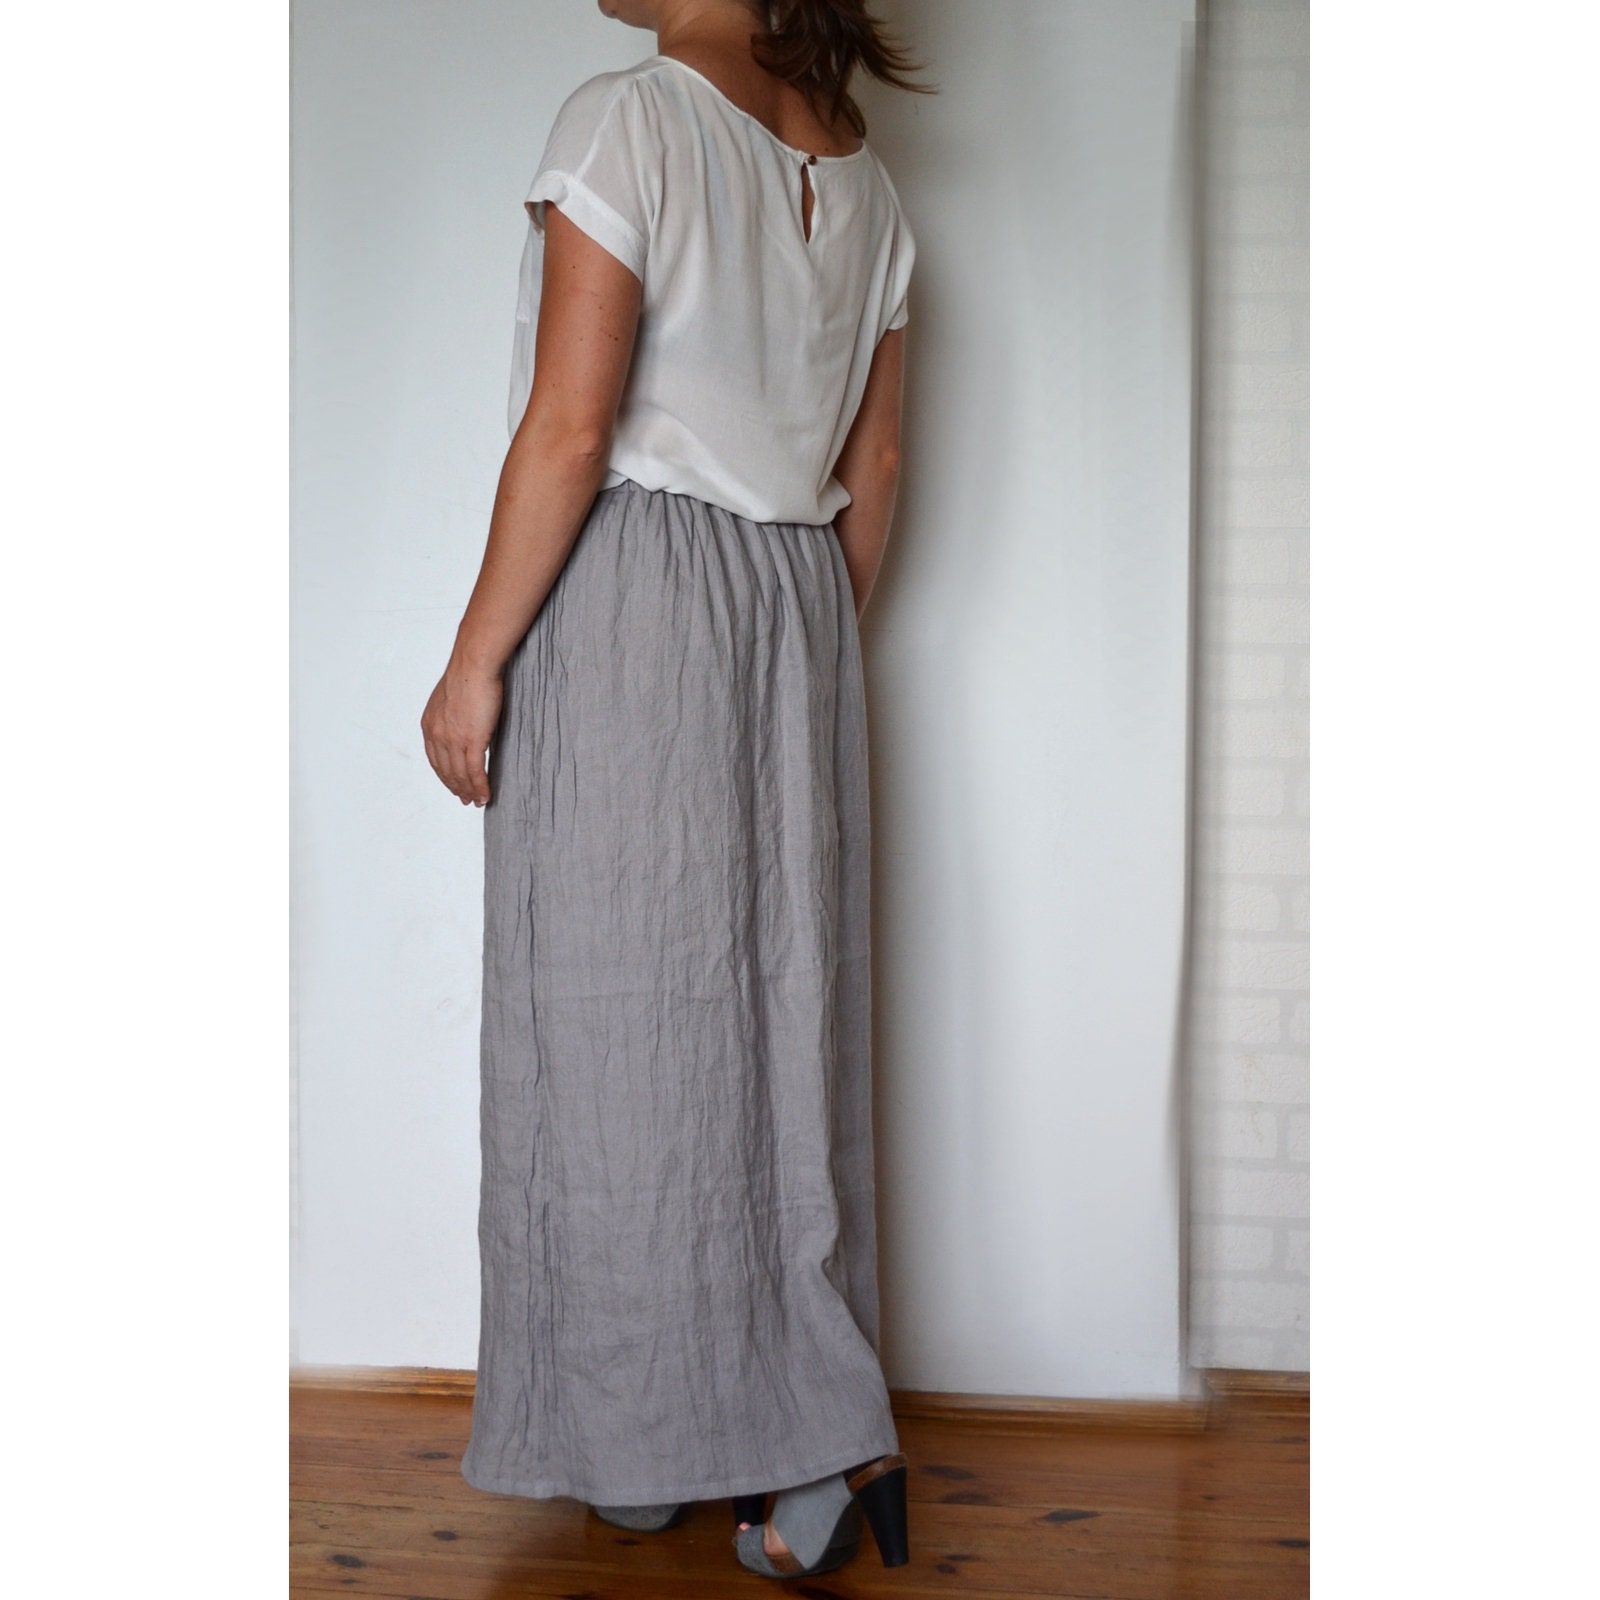 Long linen skirt Long skirt Gray Ruffle Skirt Loose Linen | Etsy